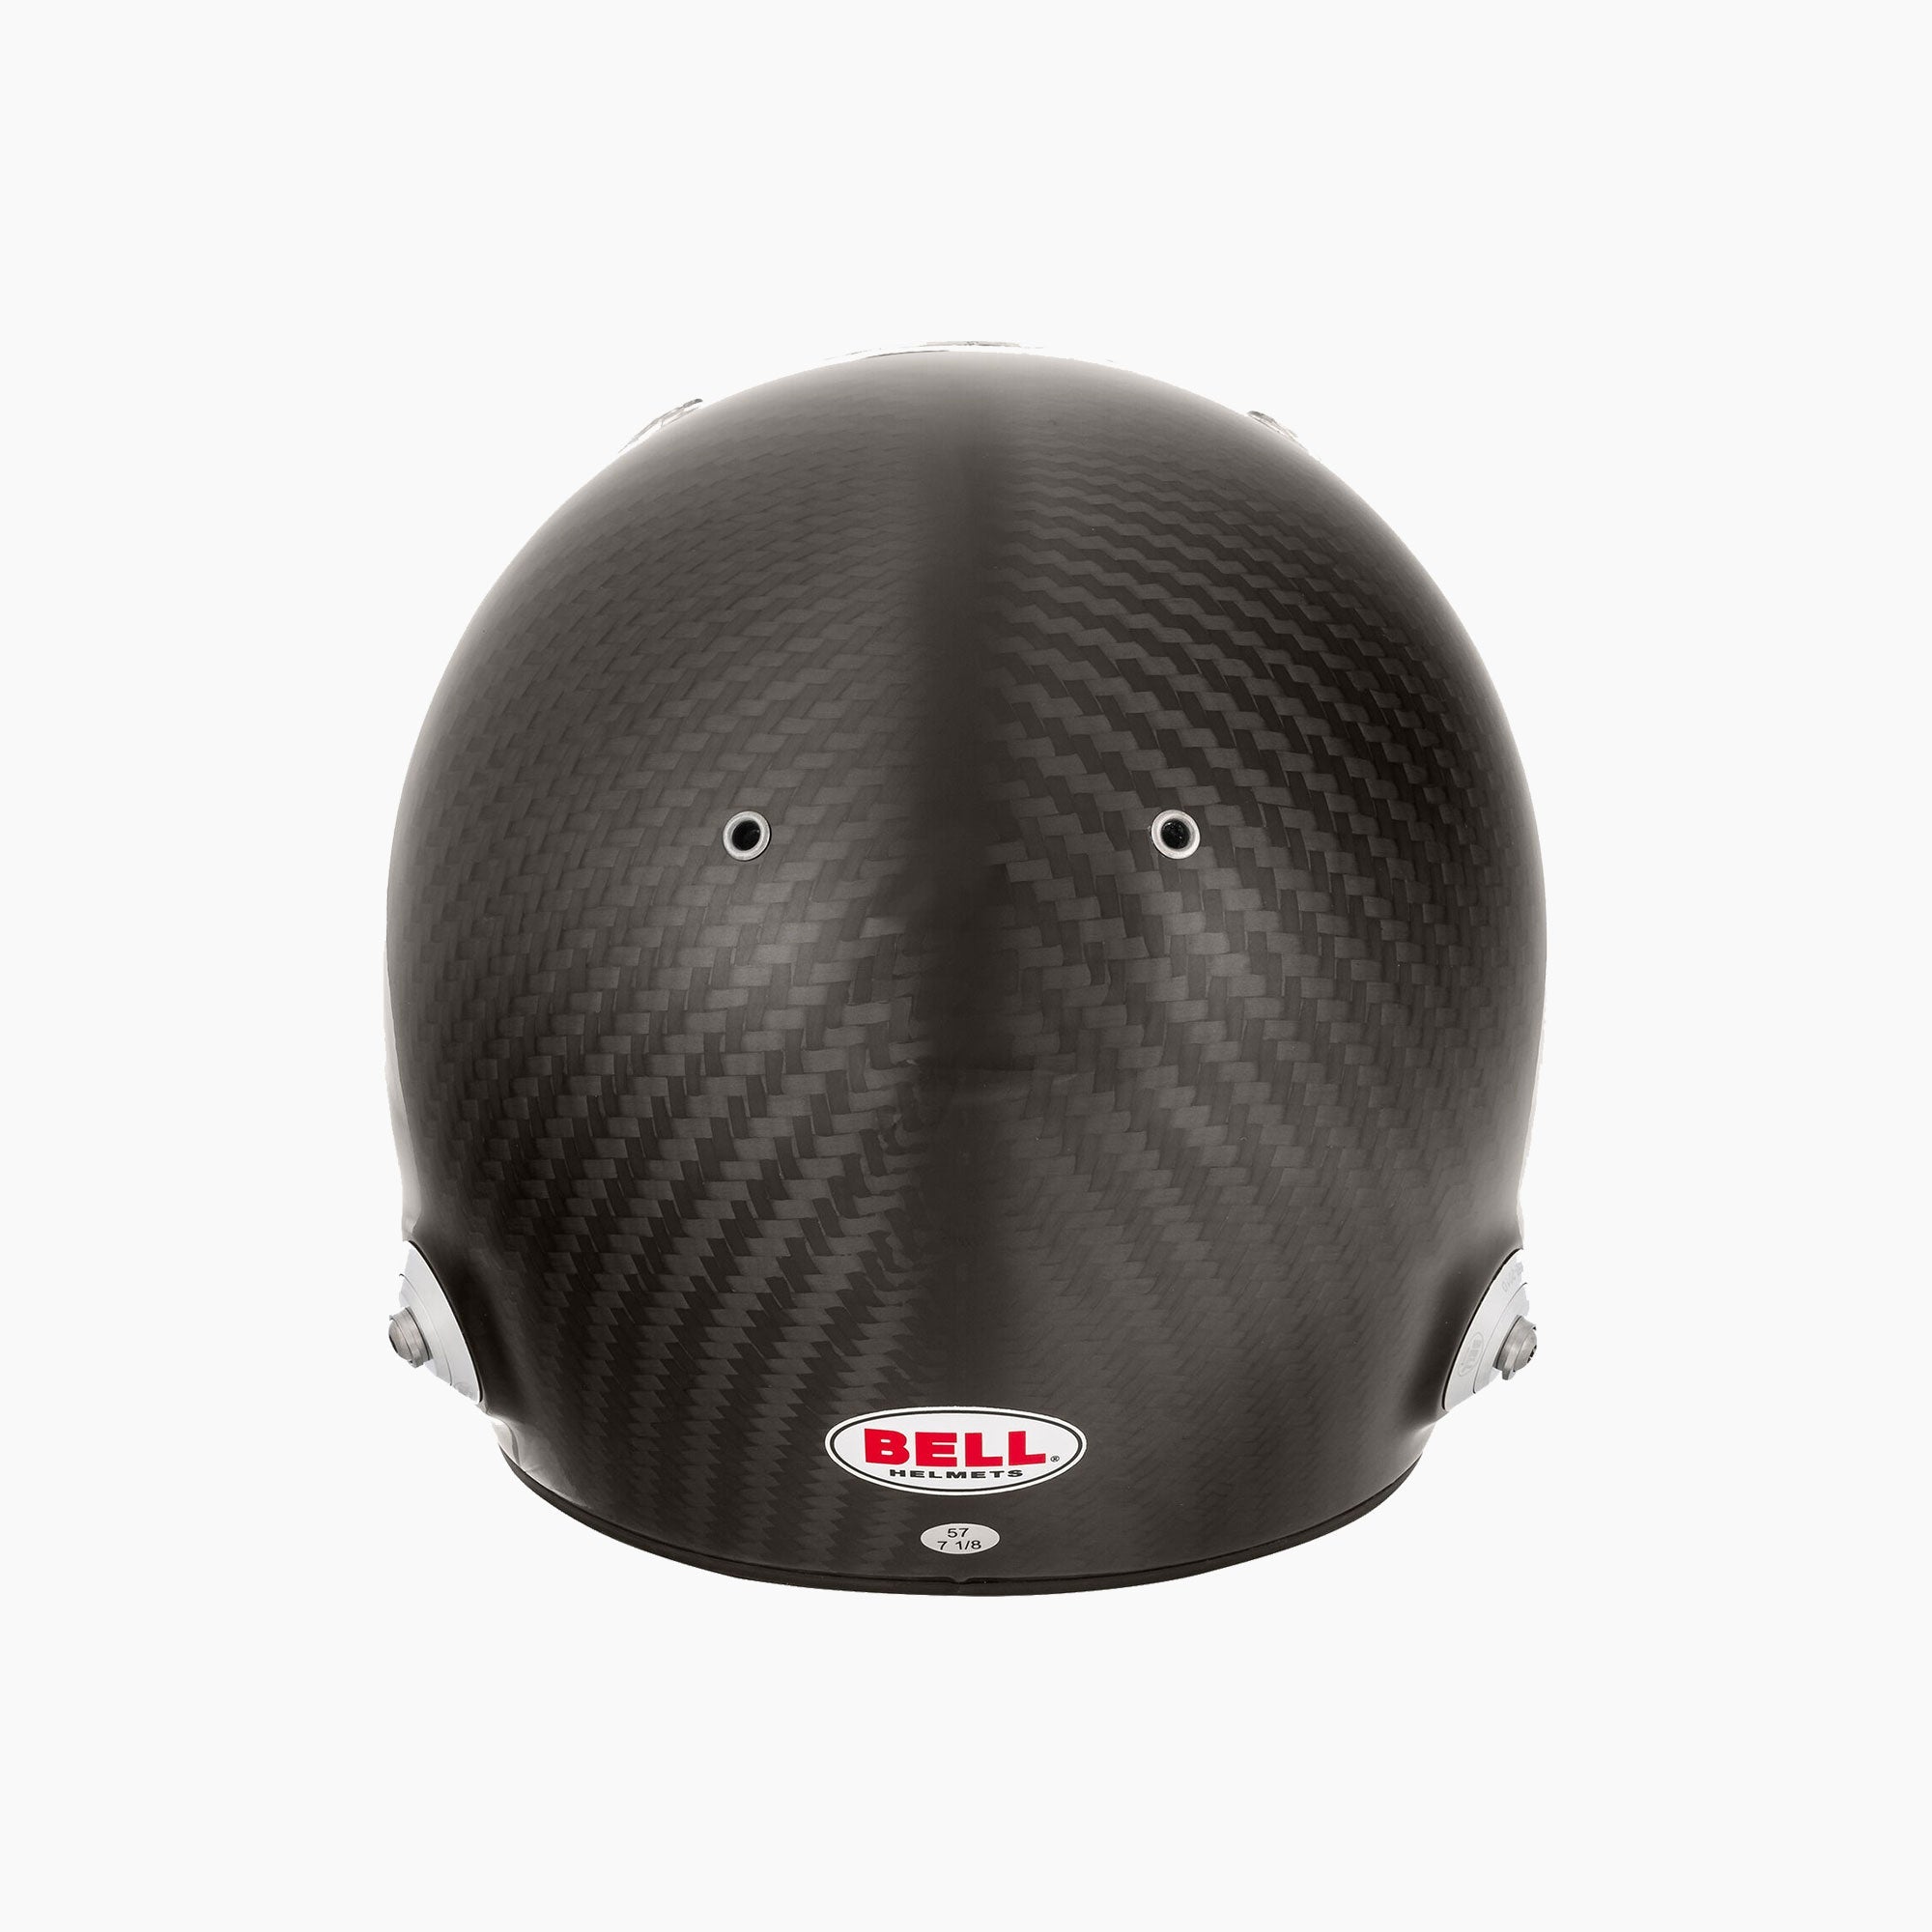 Bell Racing | RS7 Pro Carbon Racing Helmet (HANS)-Racing Helmet-Bell Racing-gpx-store